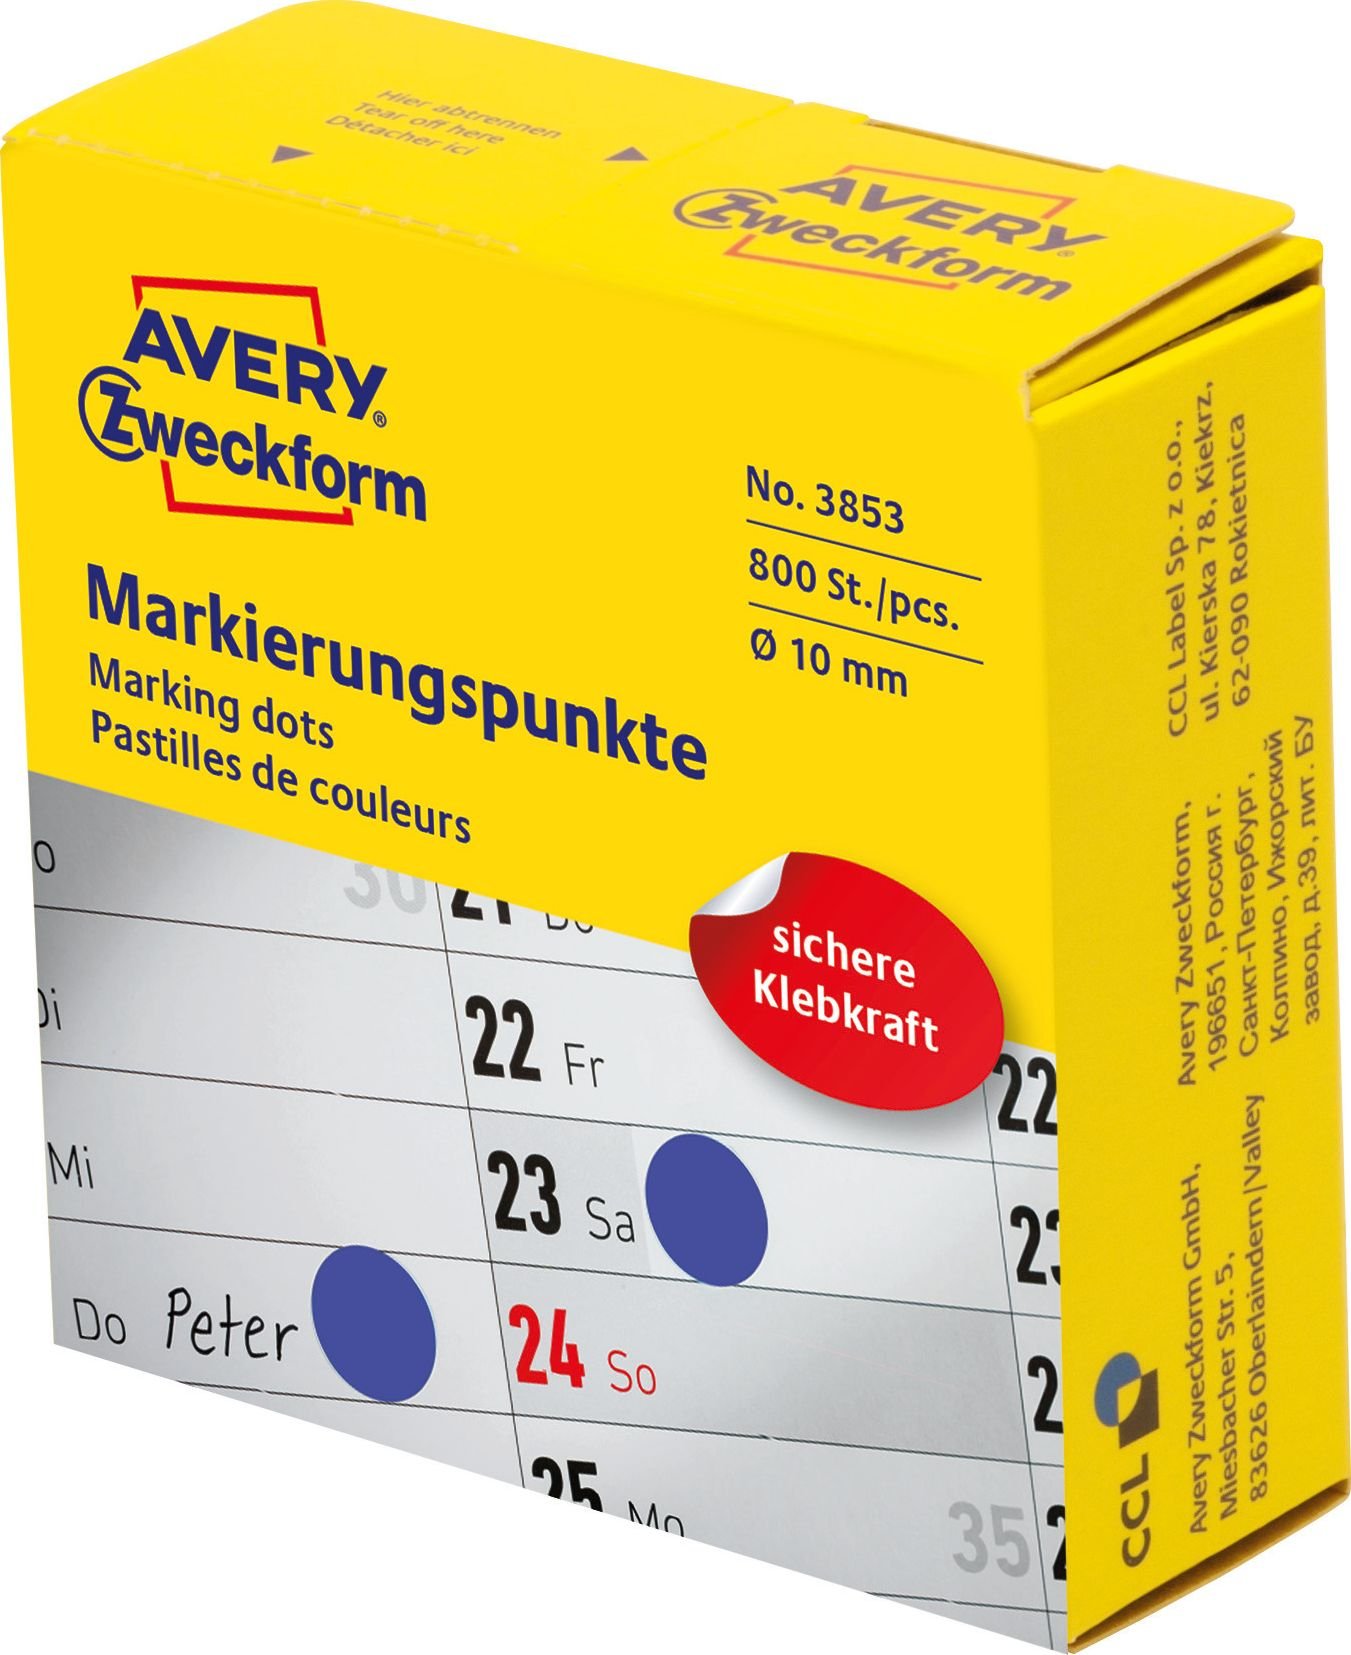 Cercuri de marcare Avery Zweckform în dozator Avery Zweckform, 800 buc/rolă, Ø10 mm, Albastru, ALBASTRU